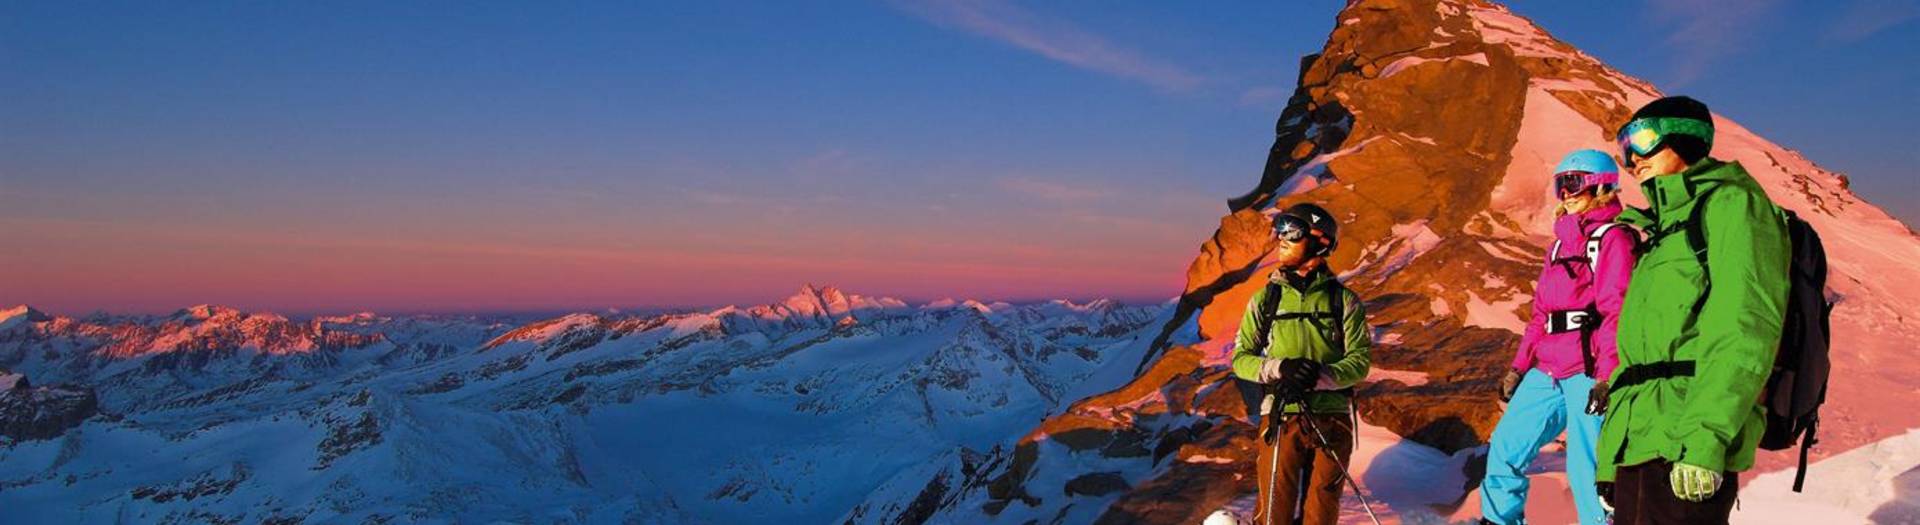 Hohe Tauern die Nationalpark-Region in Kärnten Skigenuss